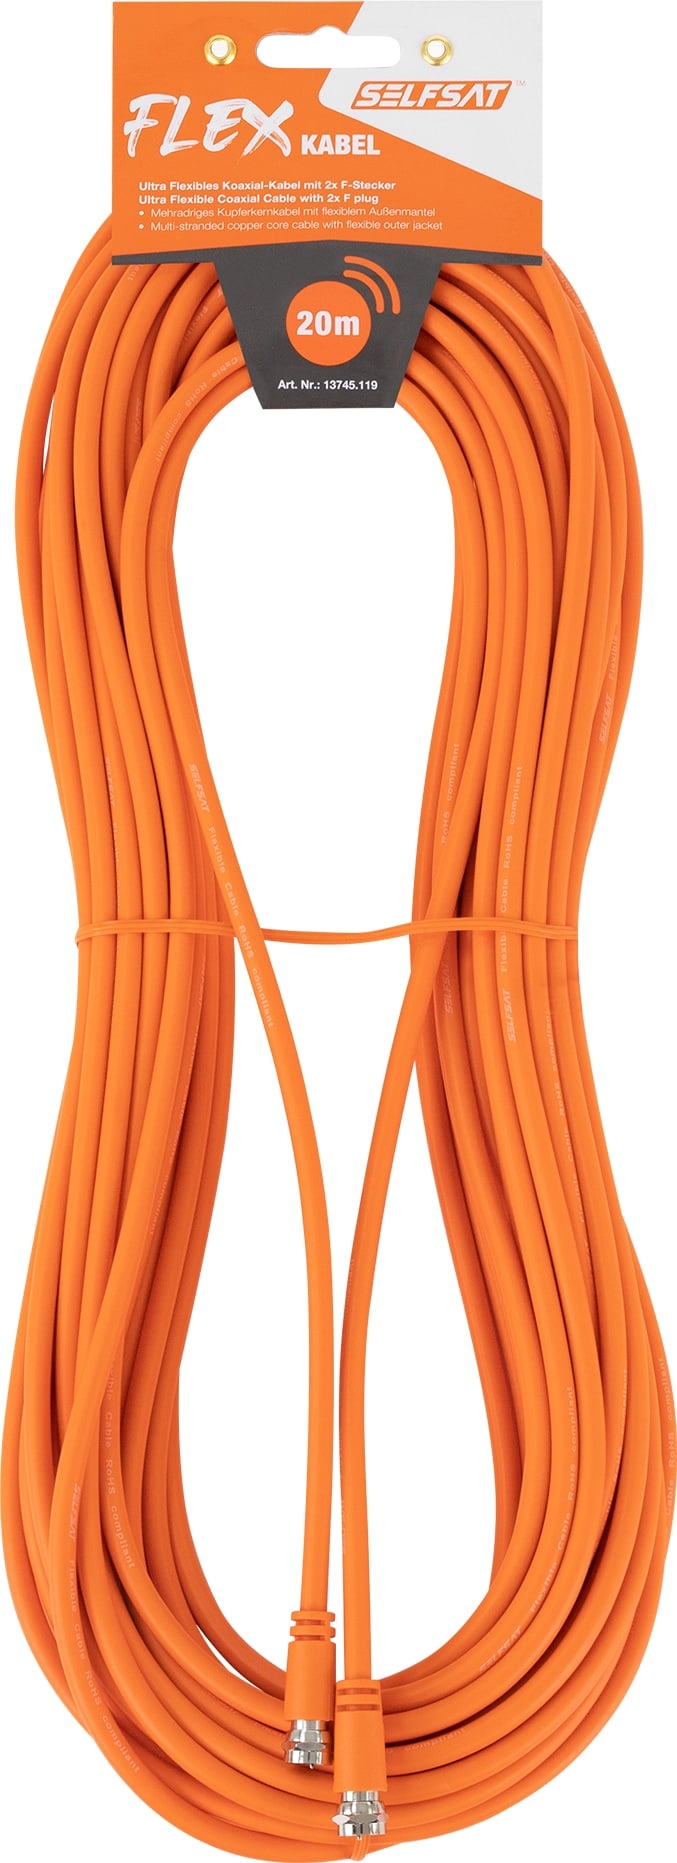 SELFSAT Antennenanschlusskabel Flex 20 m, orange